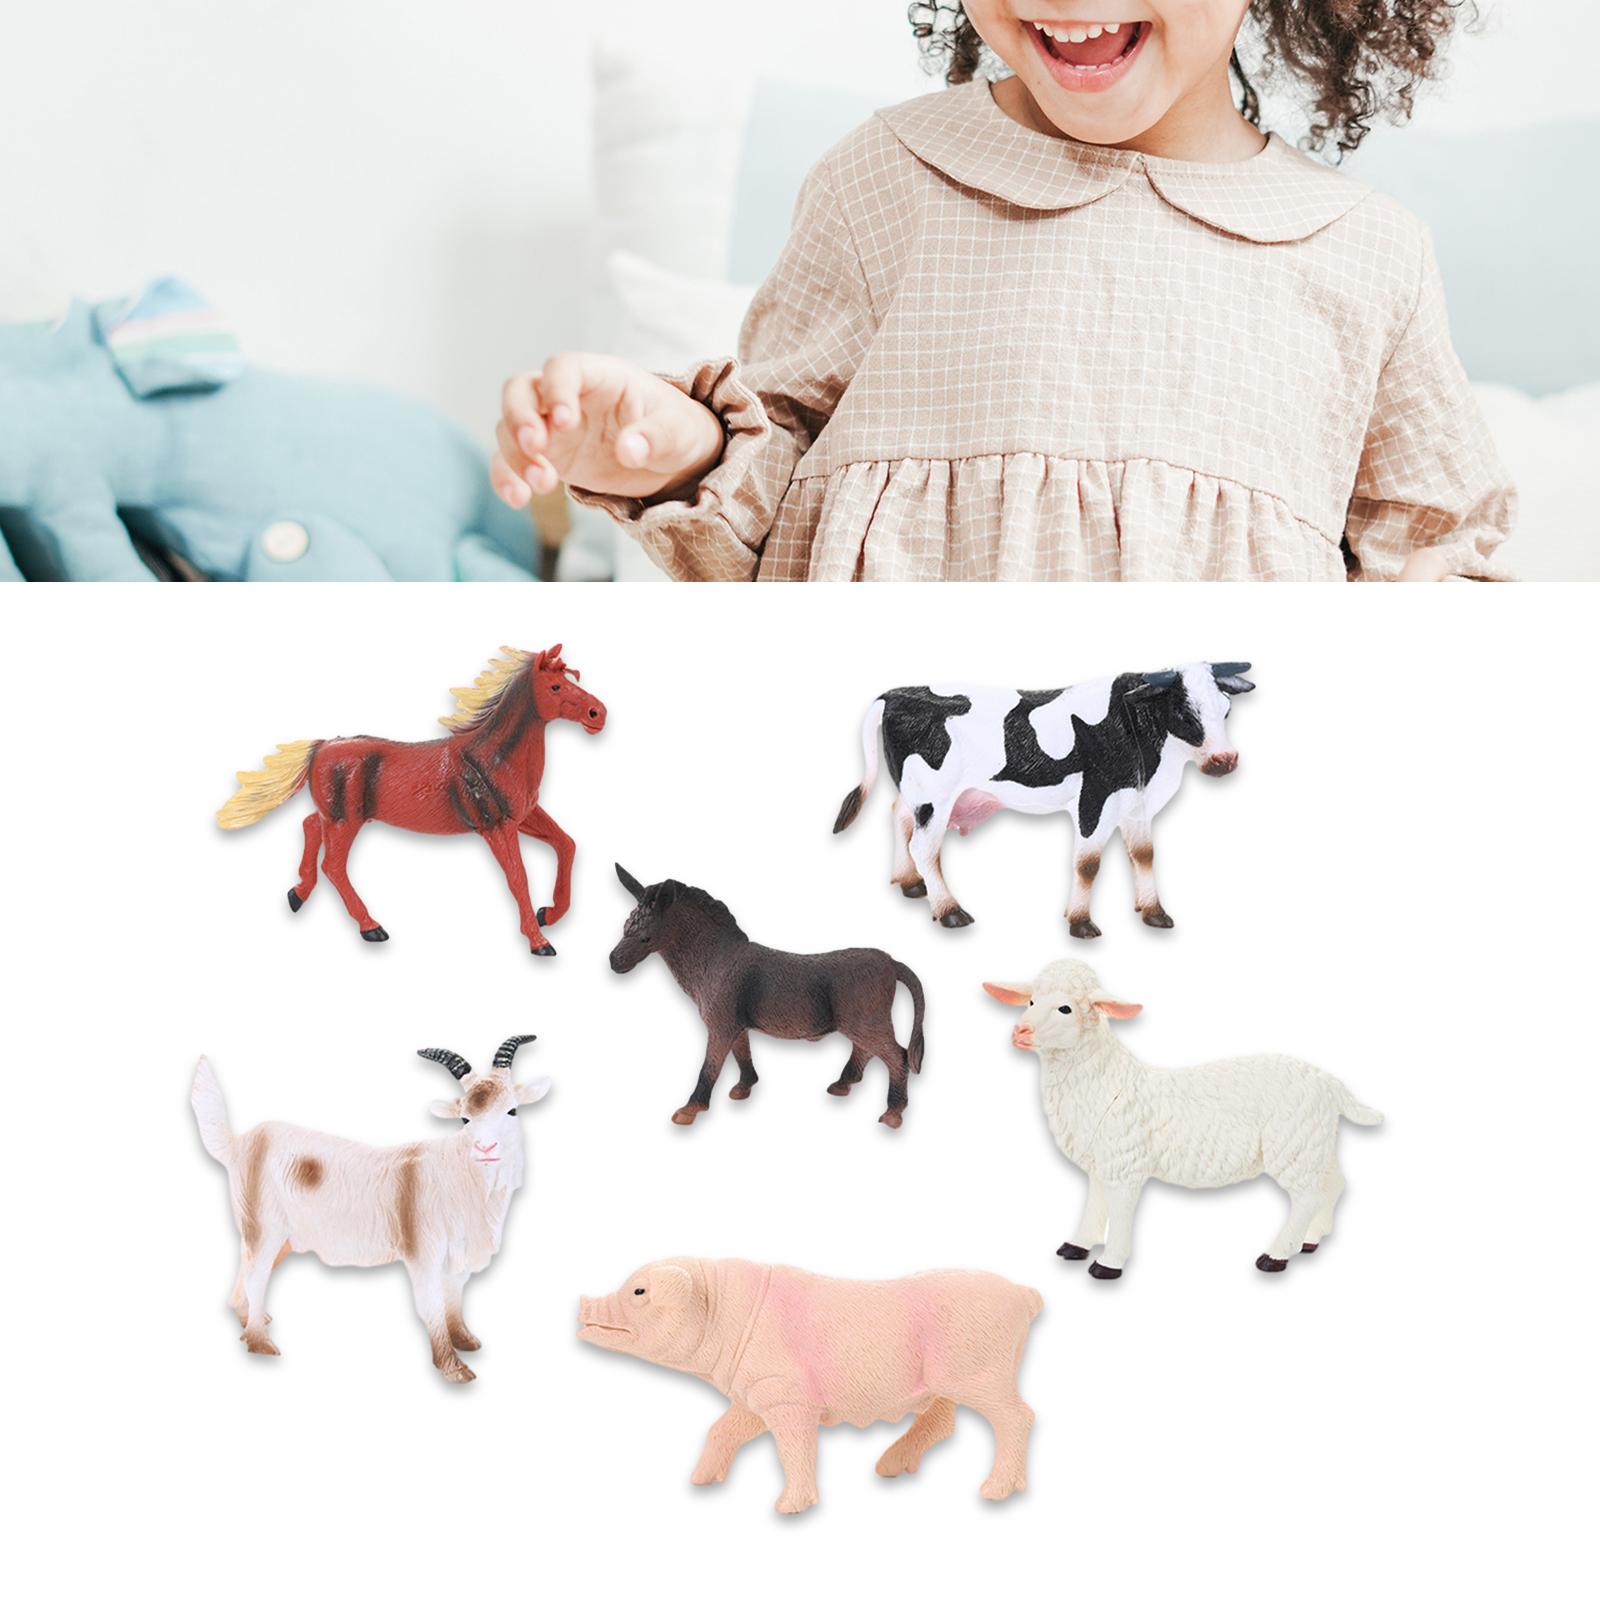 6x Animal Playset Christmas Gifts Holiday Present Educational Animal Model